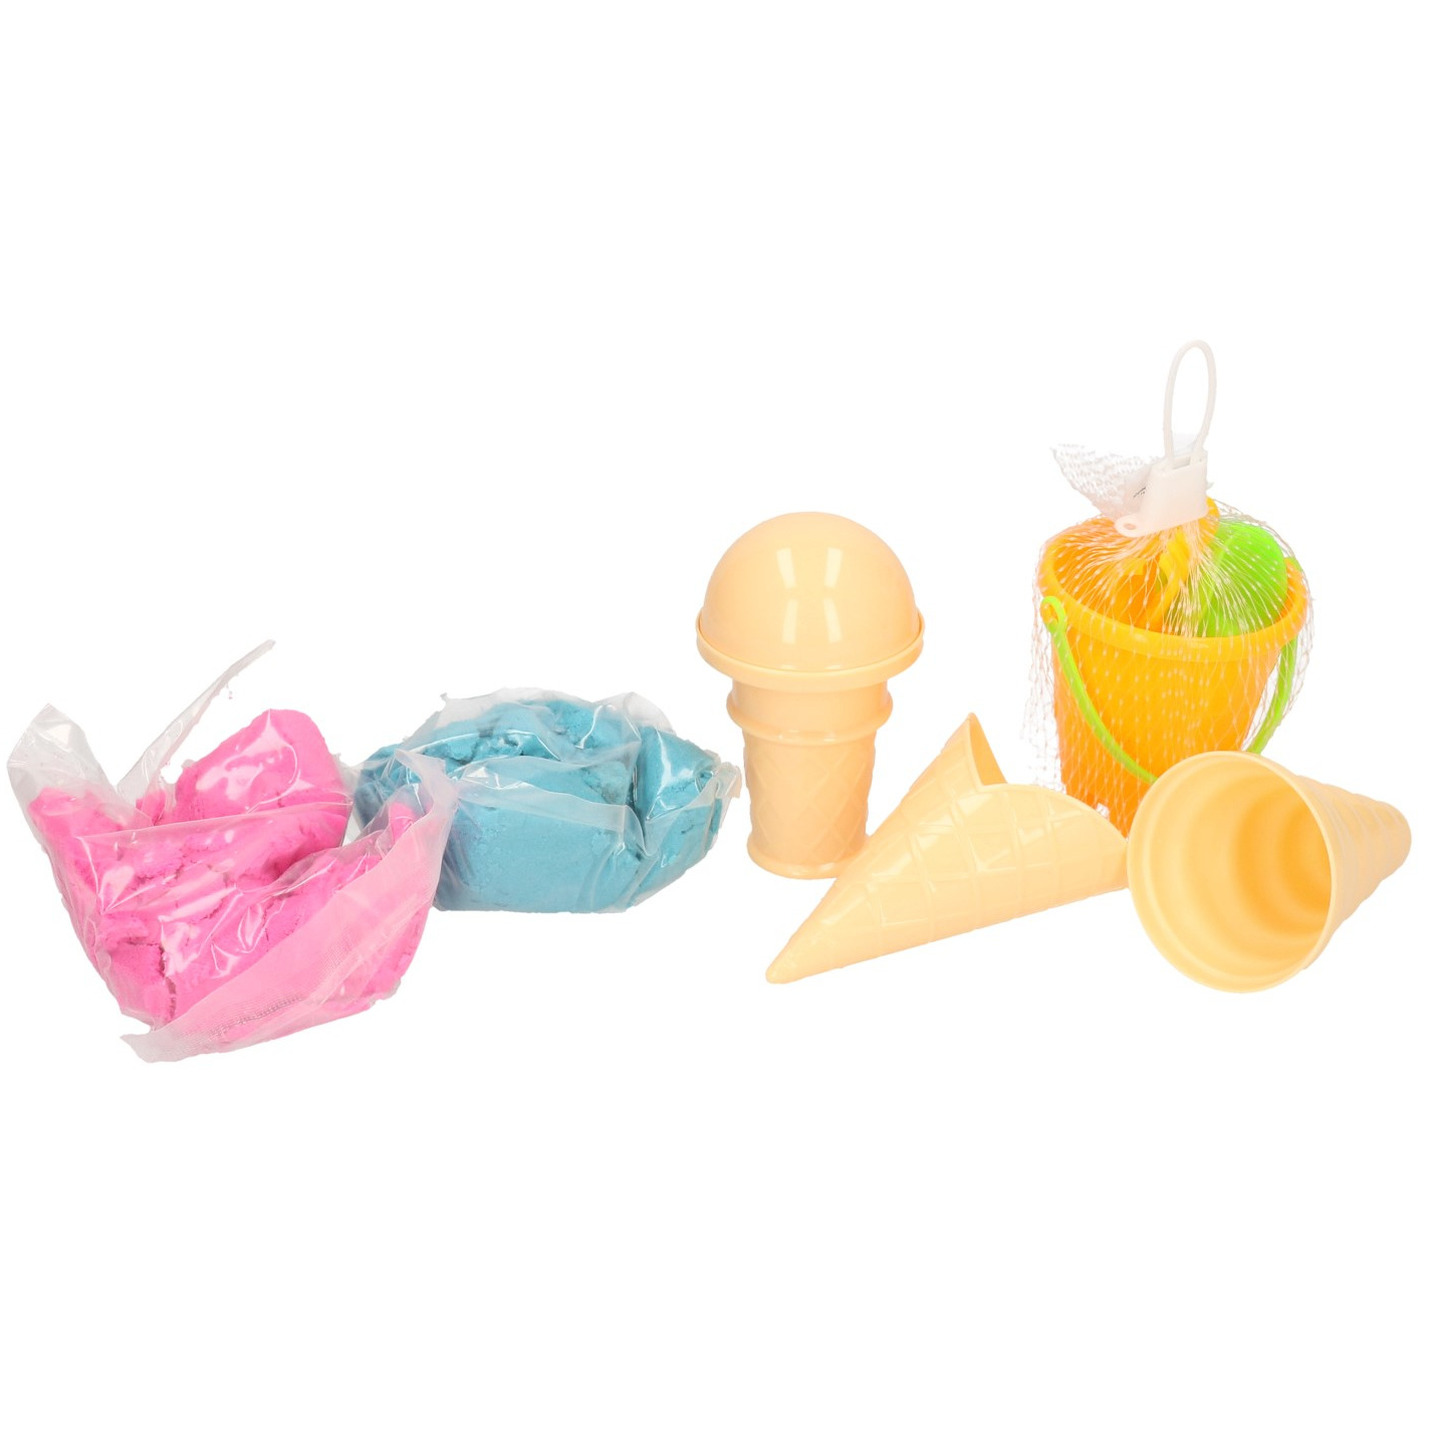 Magisch speelzand paars/groen met ijs vormpjes en emmer speelgoed